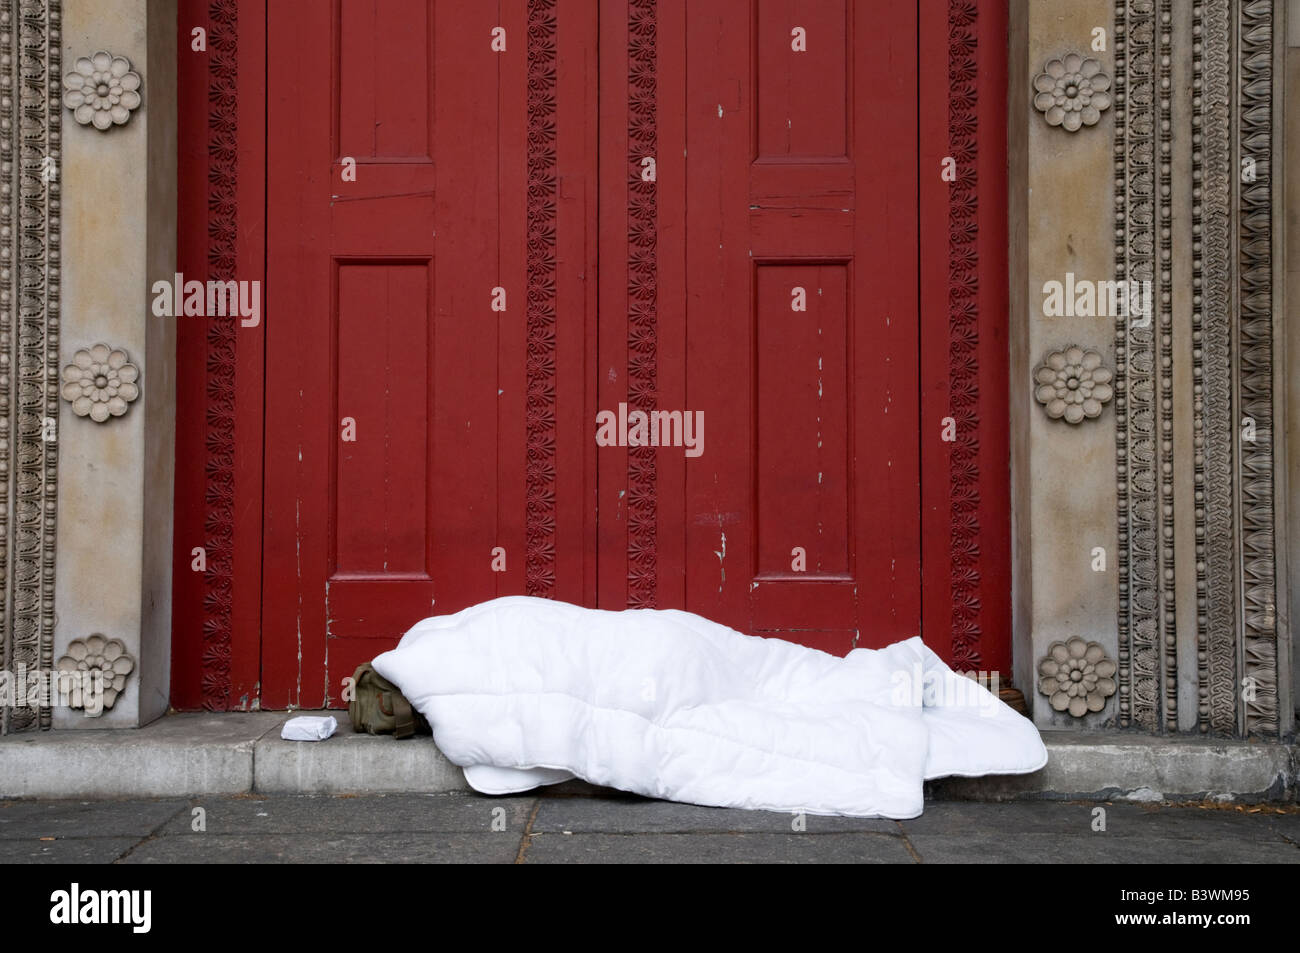 Obdachloser schlafen in einer Tür auf der Straße, London, England, UK Stockfoto